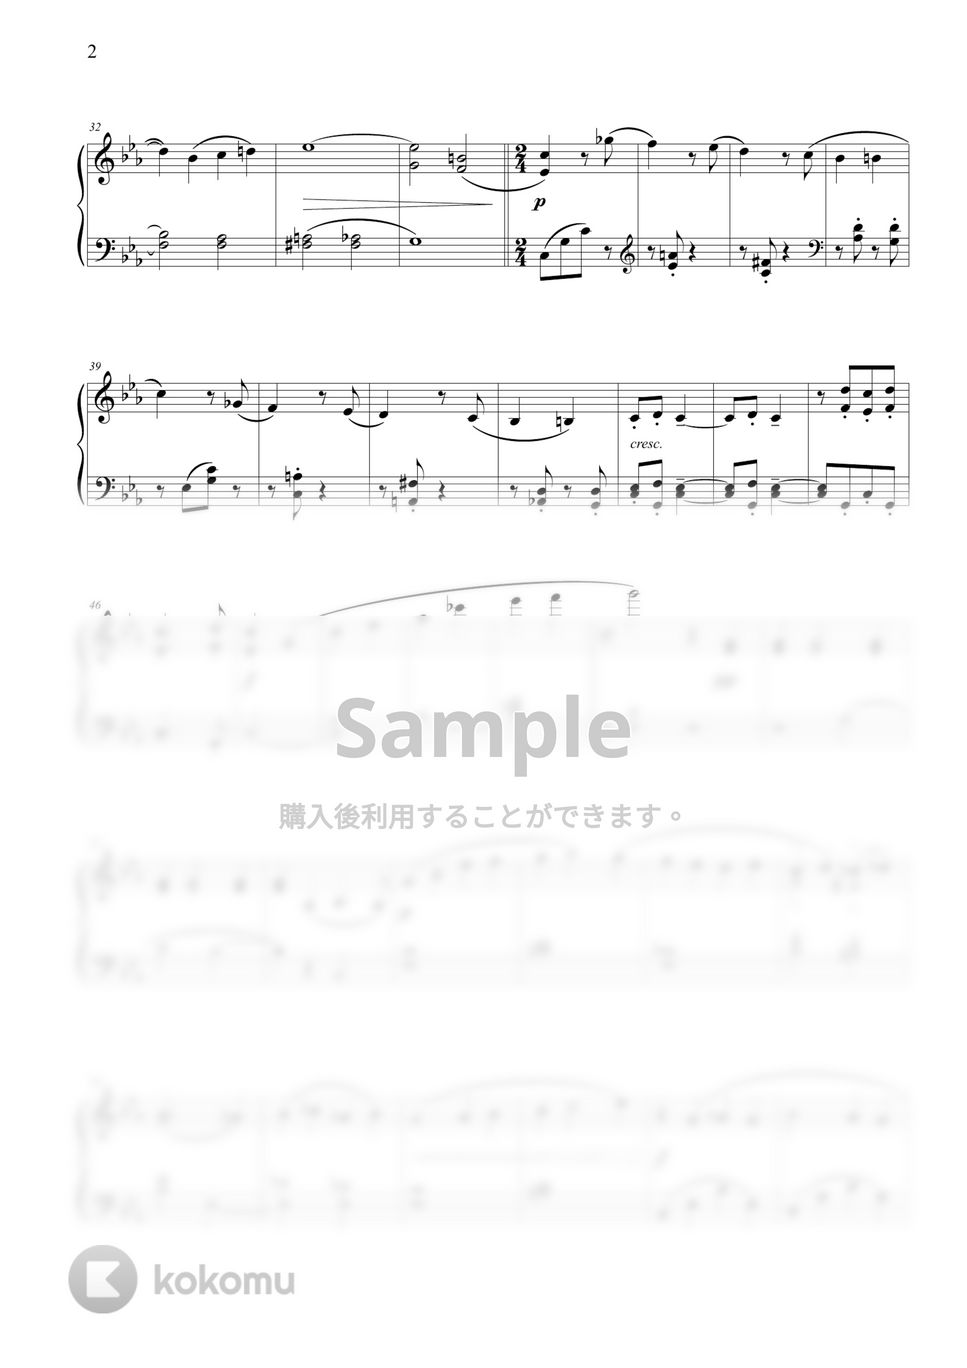 ラフマニノフ - ピアノ協奏曲第2番第1楽章 (初級バージョン) by THIS IS PIANO